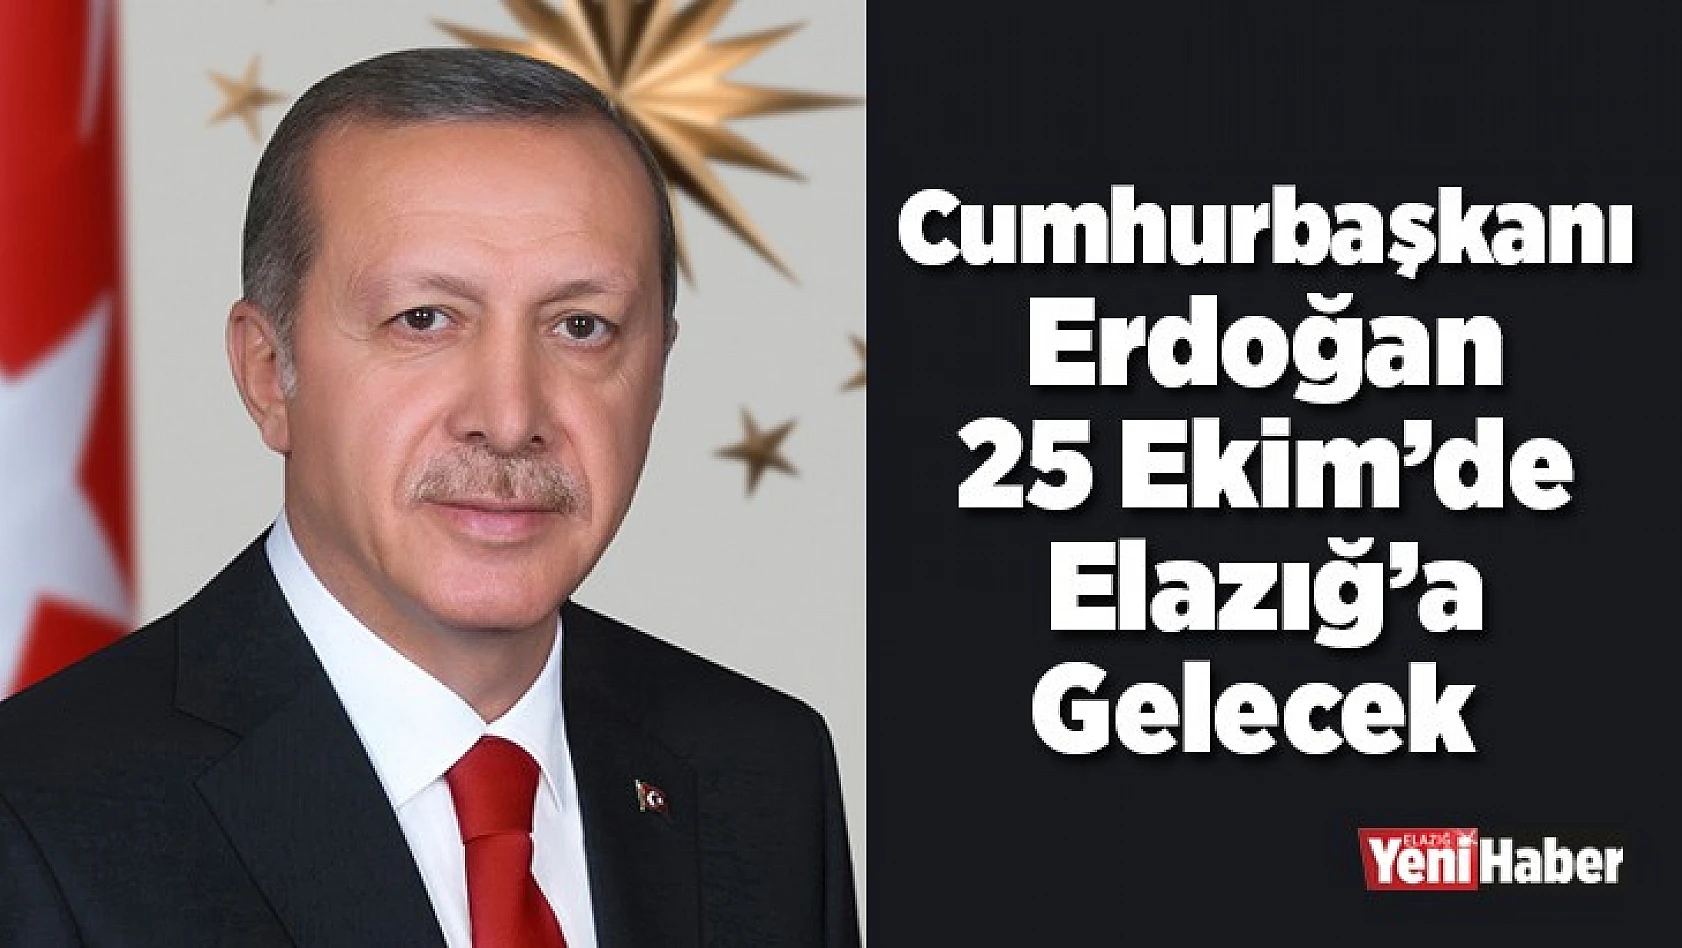 Cumhurbaşkanı Erdoğan, Elazığ'a Geliyor